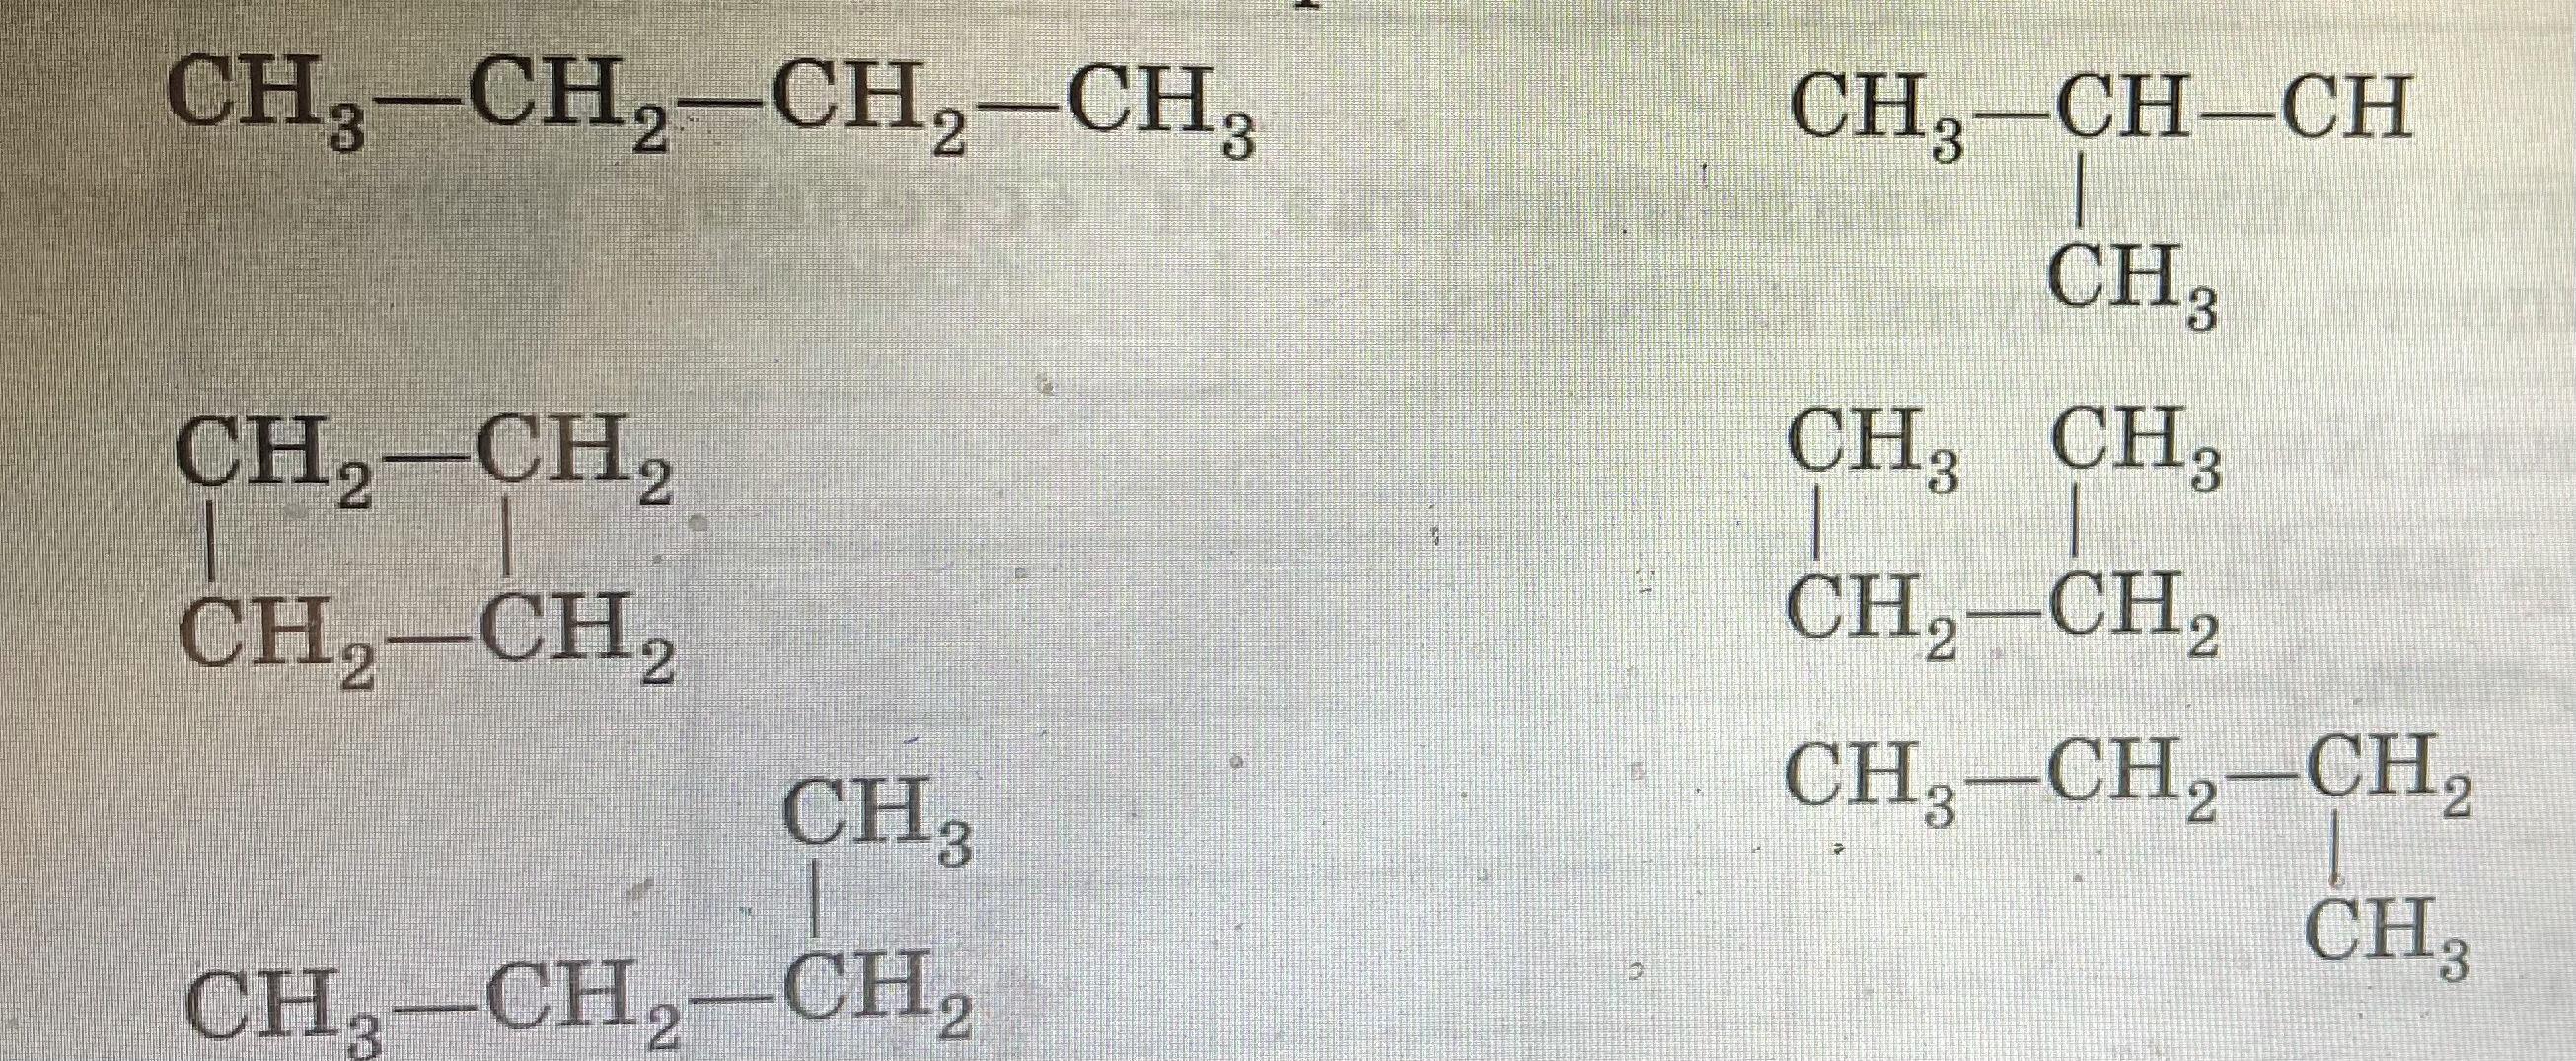 Химия б 6. Структурные формулы изомеров пентана. Изомеры органика. Как давать названия изомерам. Дайте название веществам и укажите какие из них являются изомерами.